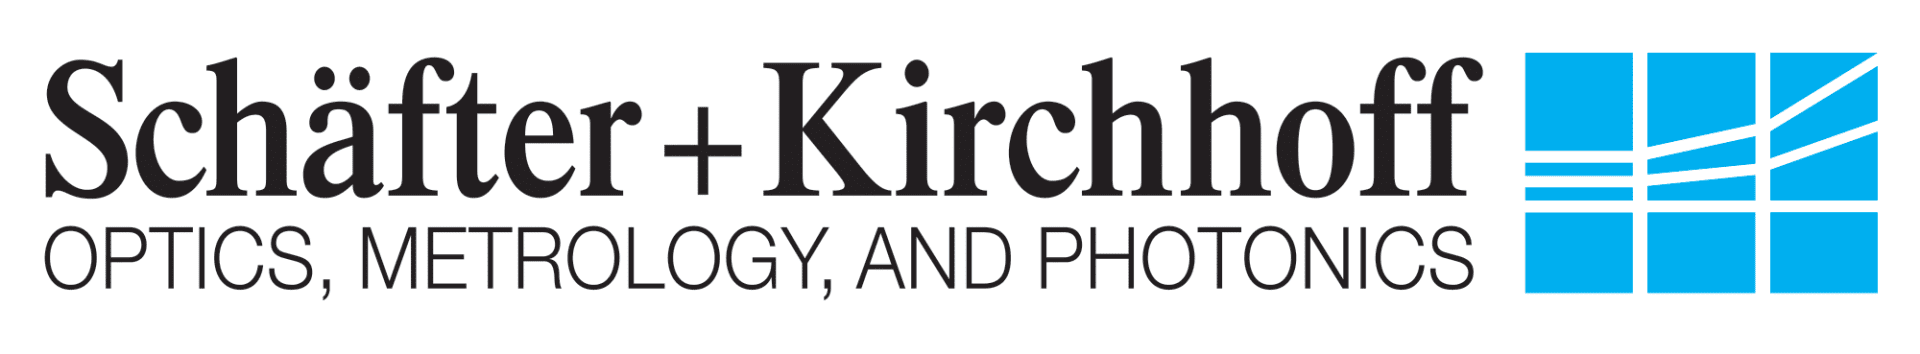 Schäfter Kirchhoff logo